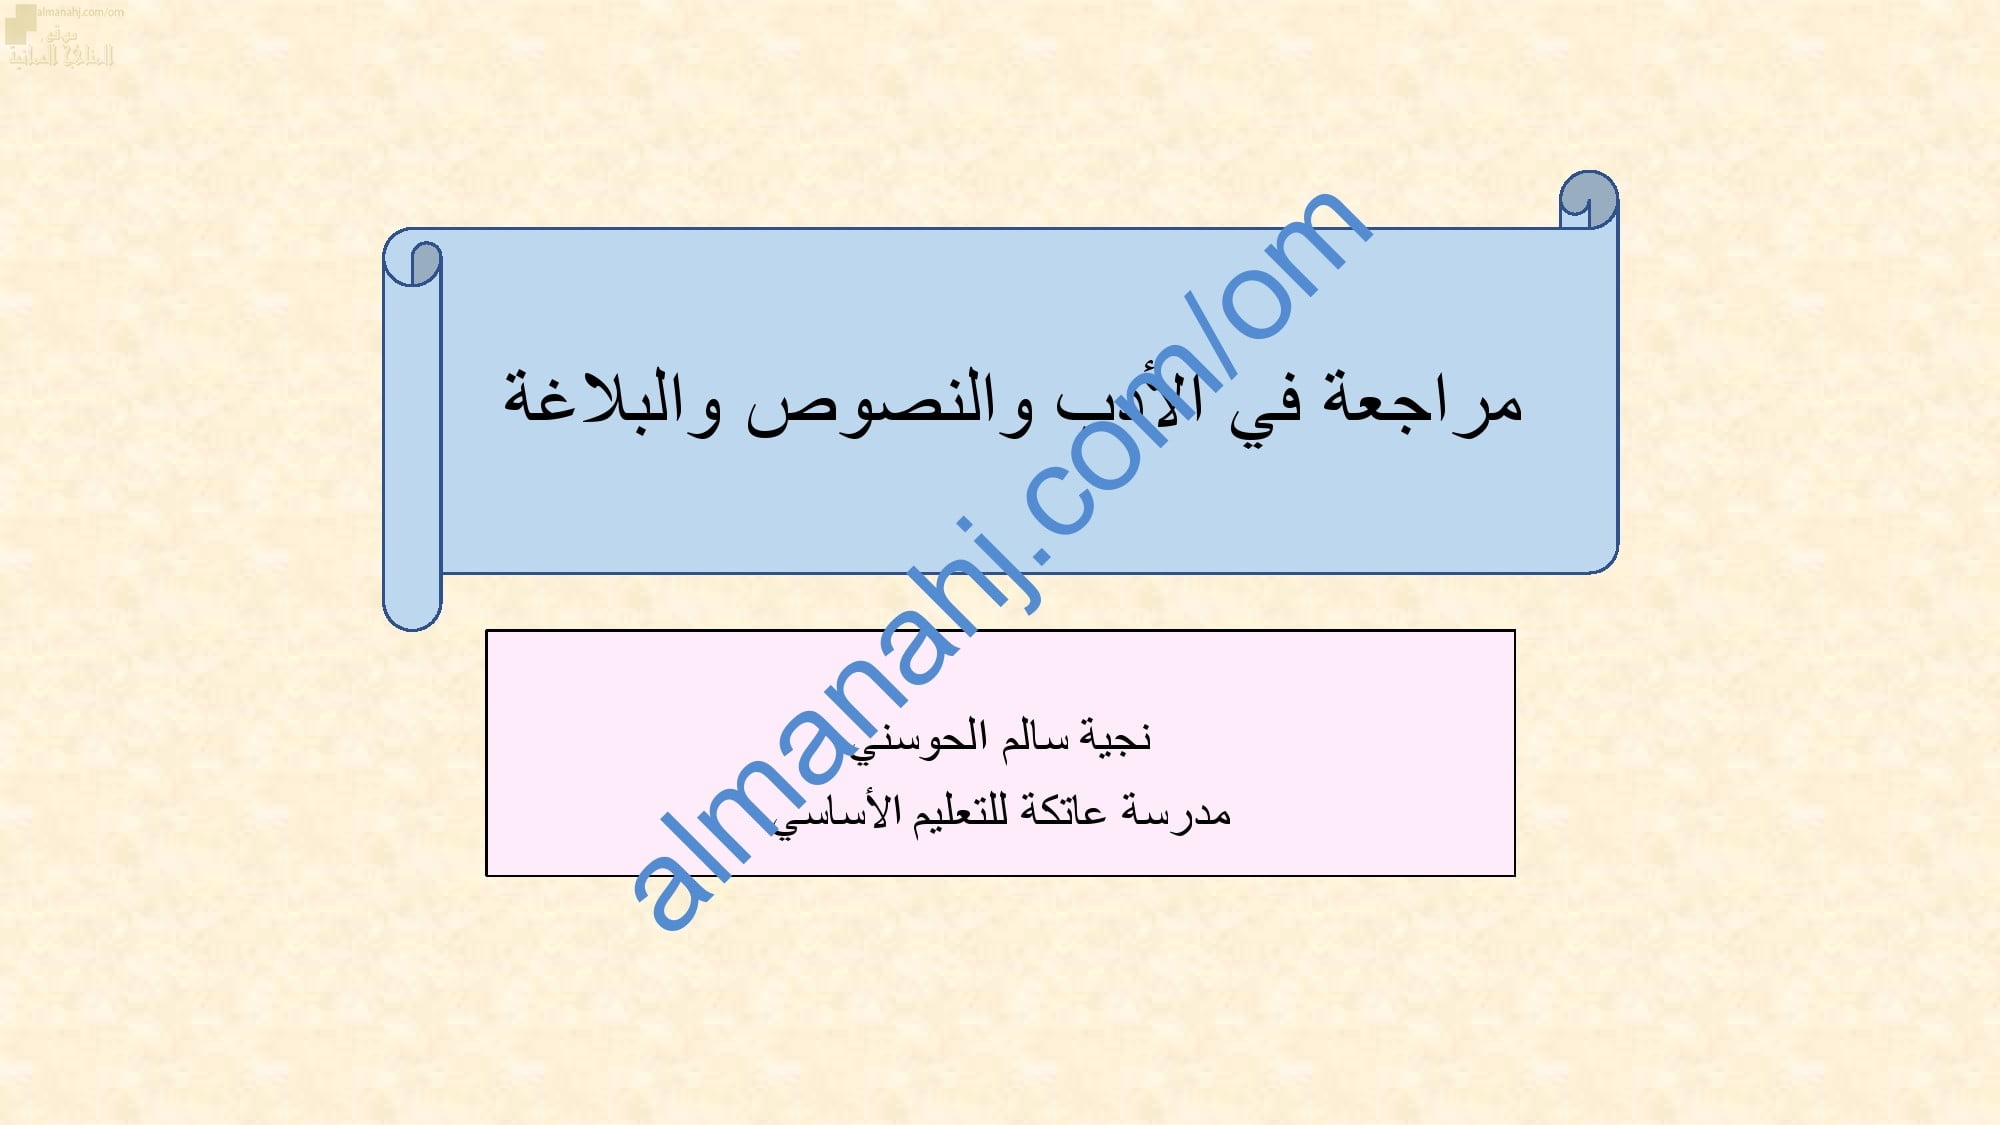 ملخص ومراجعة نهائية للاختبار النهائي في الأدب والنصوص والبلاغة (لغة عربية) الثاني عشر